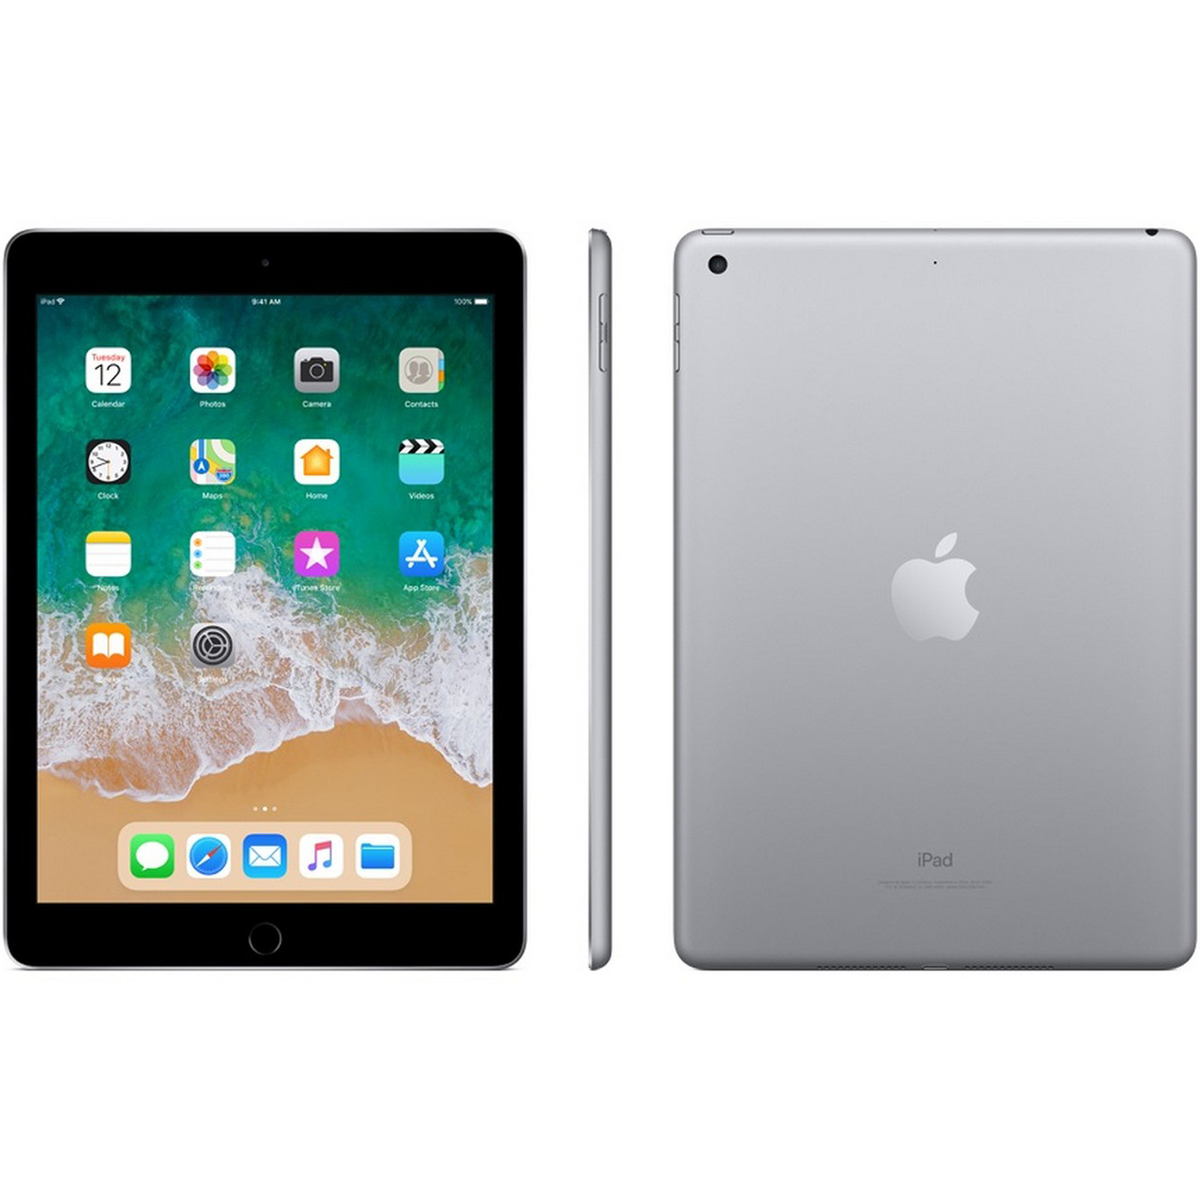 Apple iPad (6th Gen.) 128GB 9,7" LTE (2018) space gray hervorragend